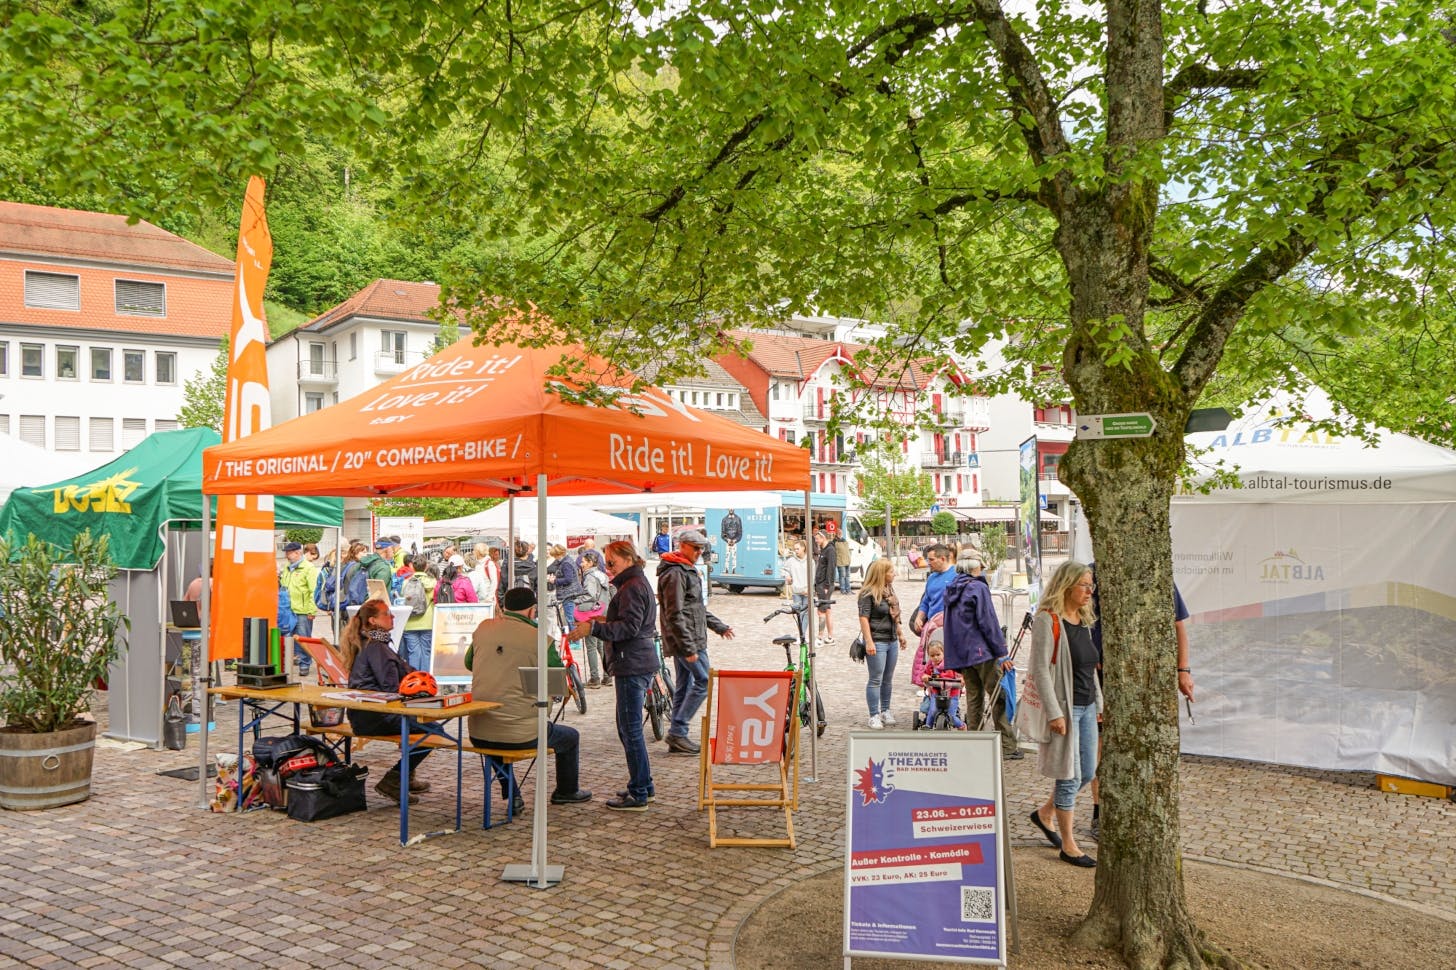 Auf der 2. Herrenalber Outdoor-Messe präsentieren am 4. und 5. Mai Aussteller Wellness-, Natur- und Tourismusangebote und die neuesten Outdoor-Trends auf dem Rathausplatz. 